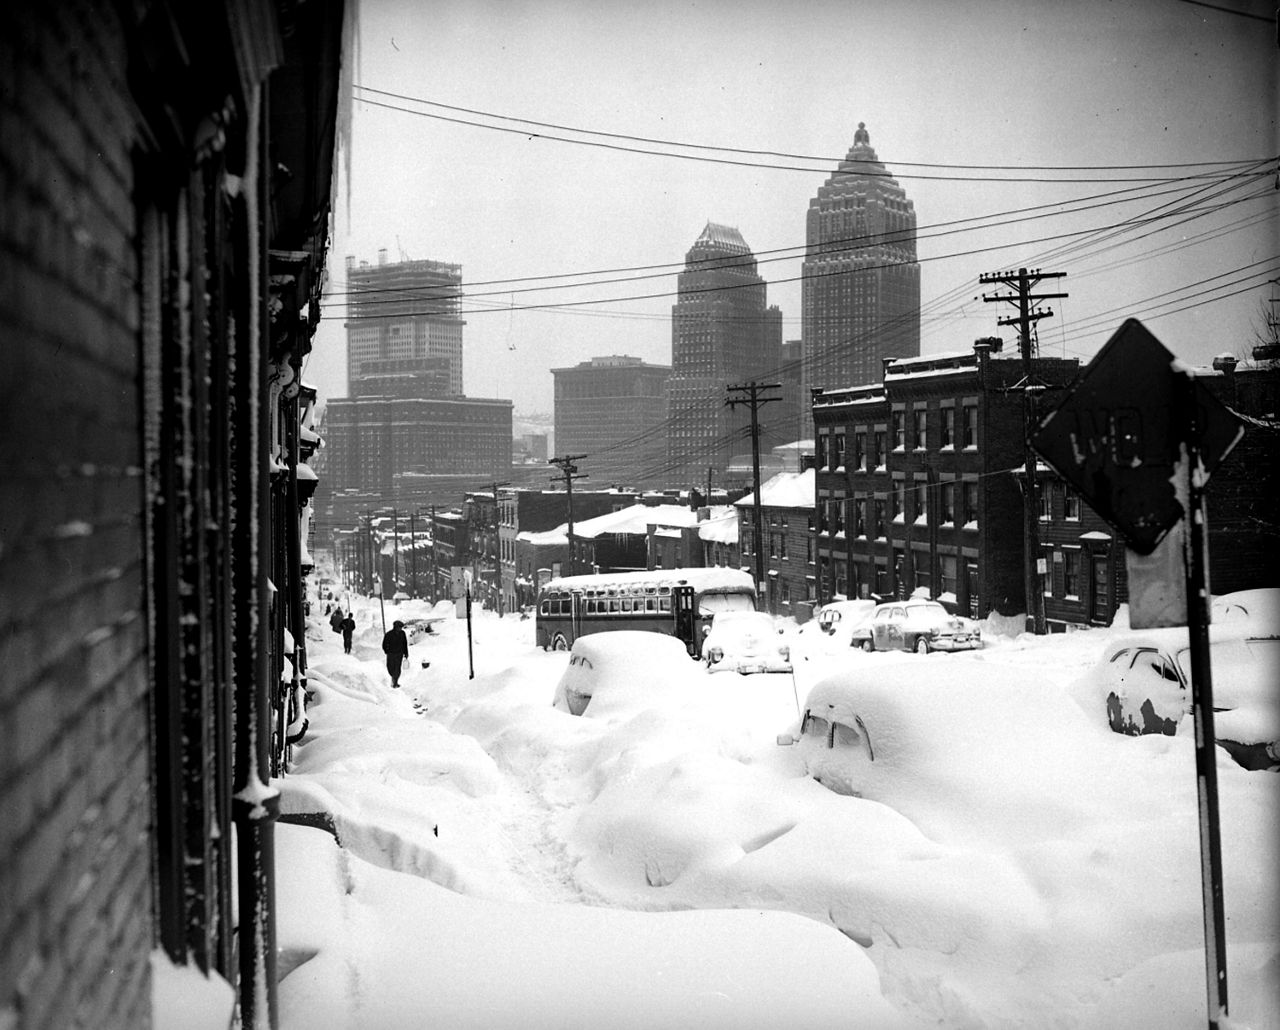 Mirando hacia el centro de Pittsburgh, Webster Avenue está enterrada bajo la nieve el 26 de noviembre de 1950, después de una nevada récord.  El rascacielos Mellon está en construcción al fondo a la izquierda.  (Foto AP/Walter Stein)